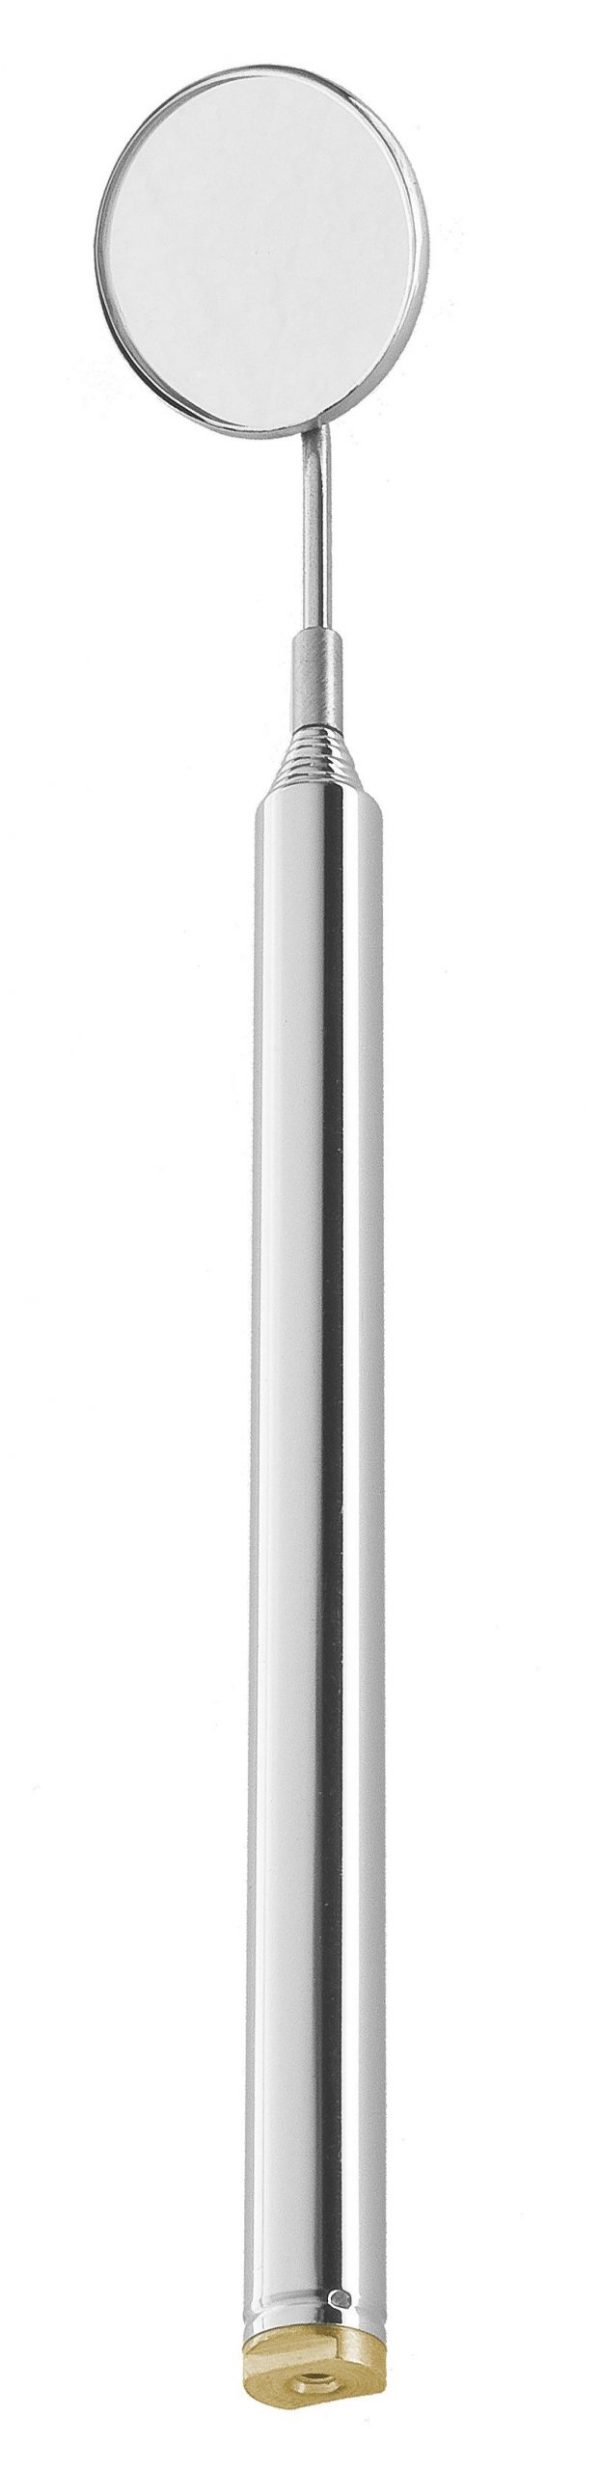 Teleskopspiegelgriff -180- 64.235.85zum Preis von 11.81 zzgl. Versand Hersteller : Heiko Wild